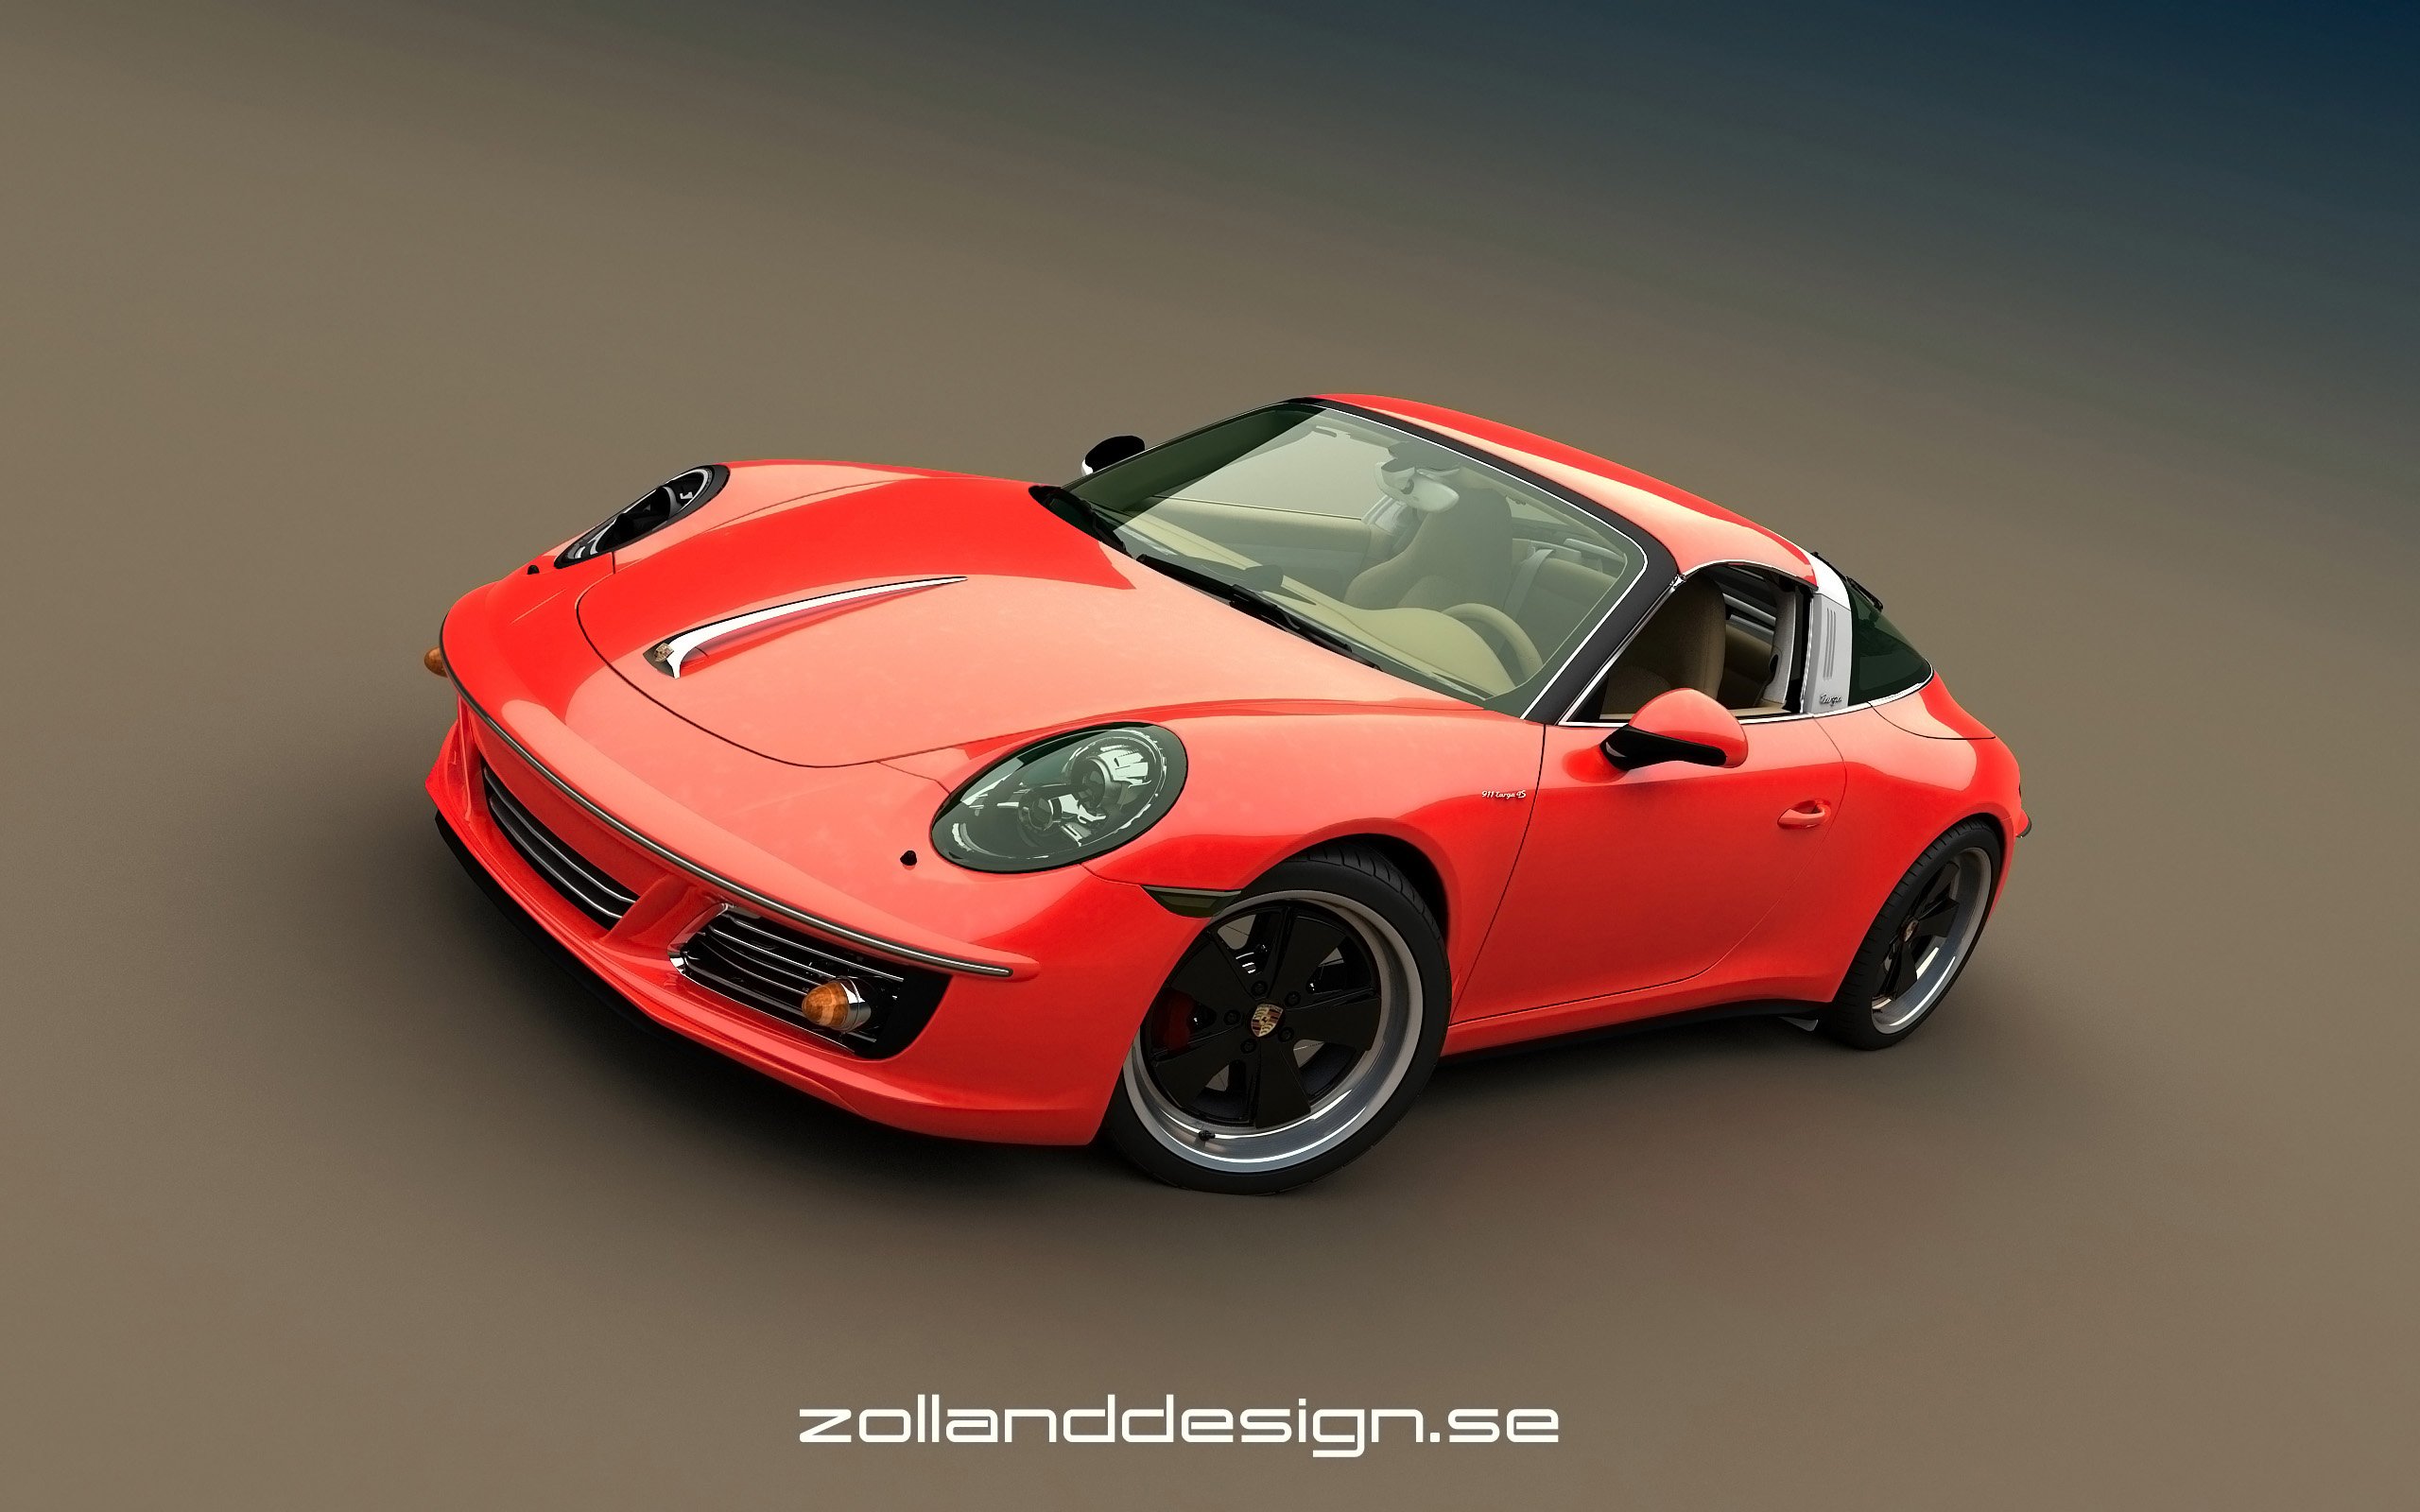 2016, Zolland, Design, Porsche, 991356, Retro, Tuning Wallpaper